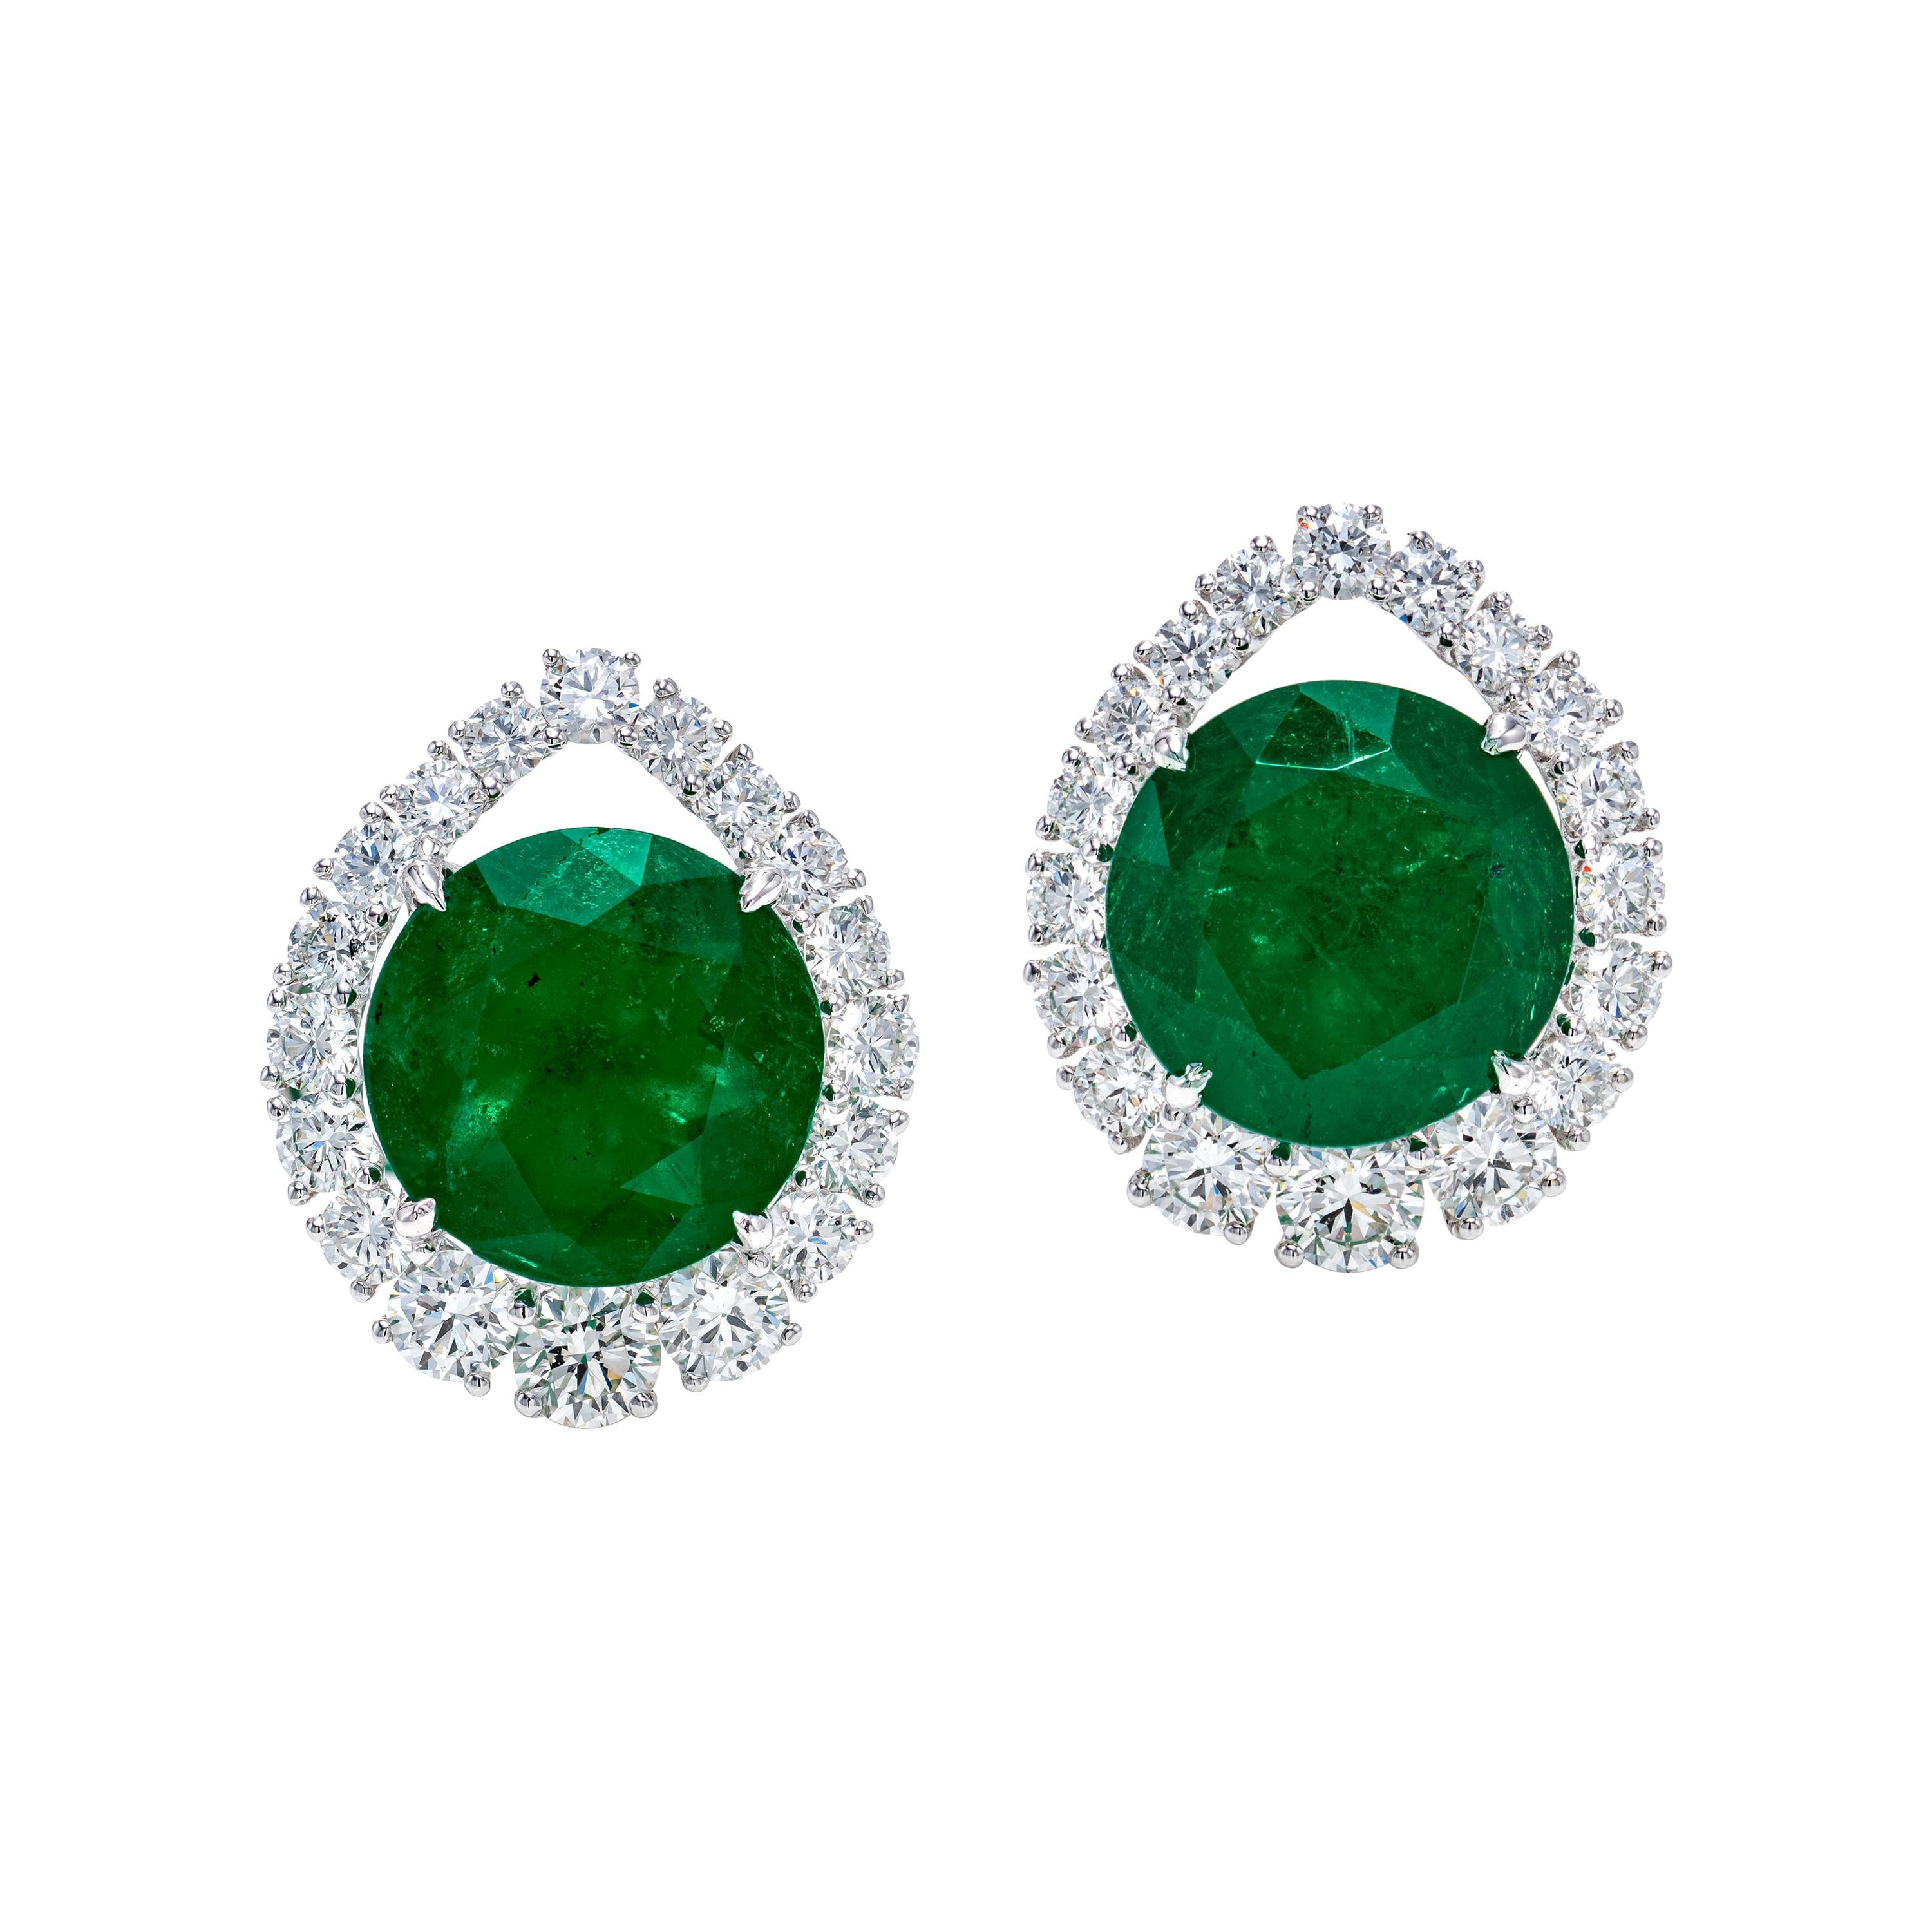 Gubelin Certified 10.59 Carat Round Colombian Emerald Earrings in 18K Gold